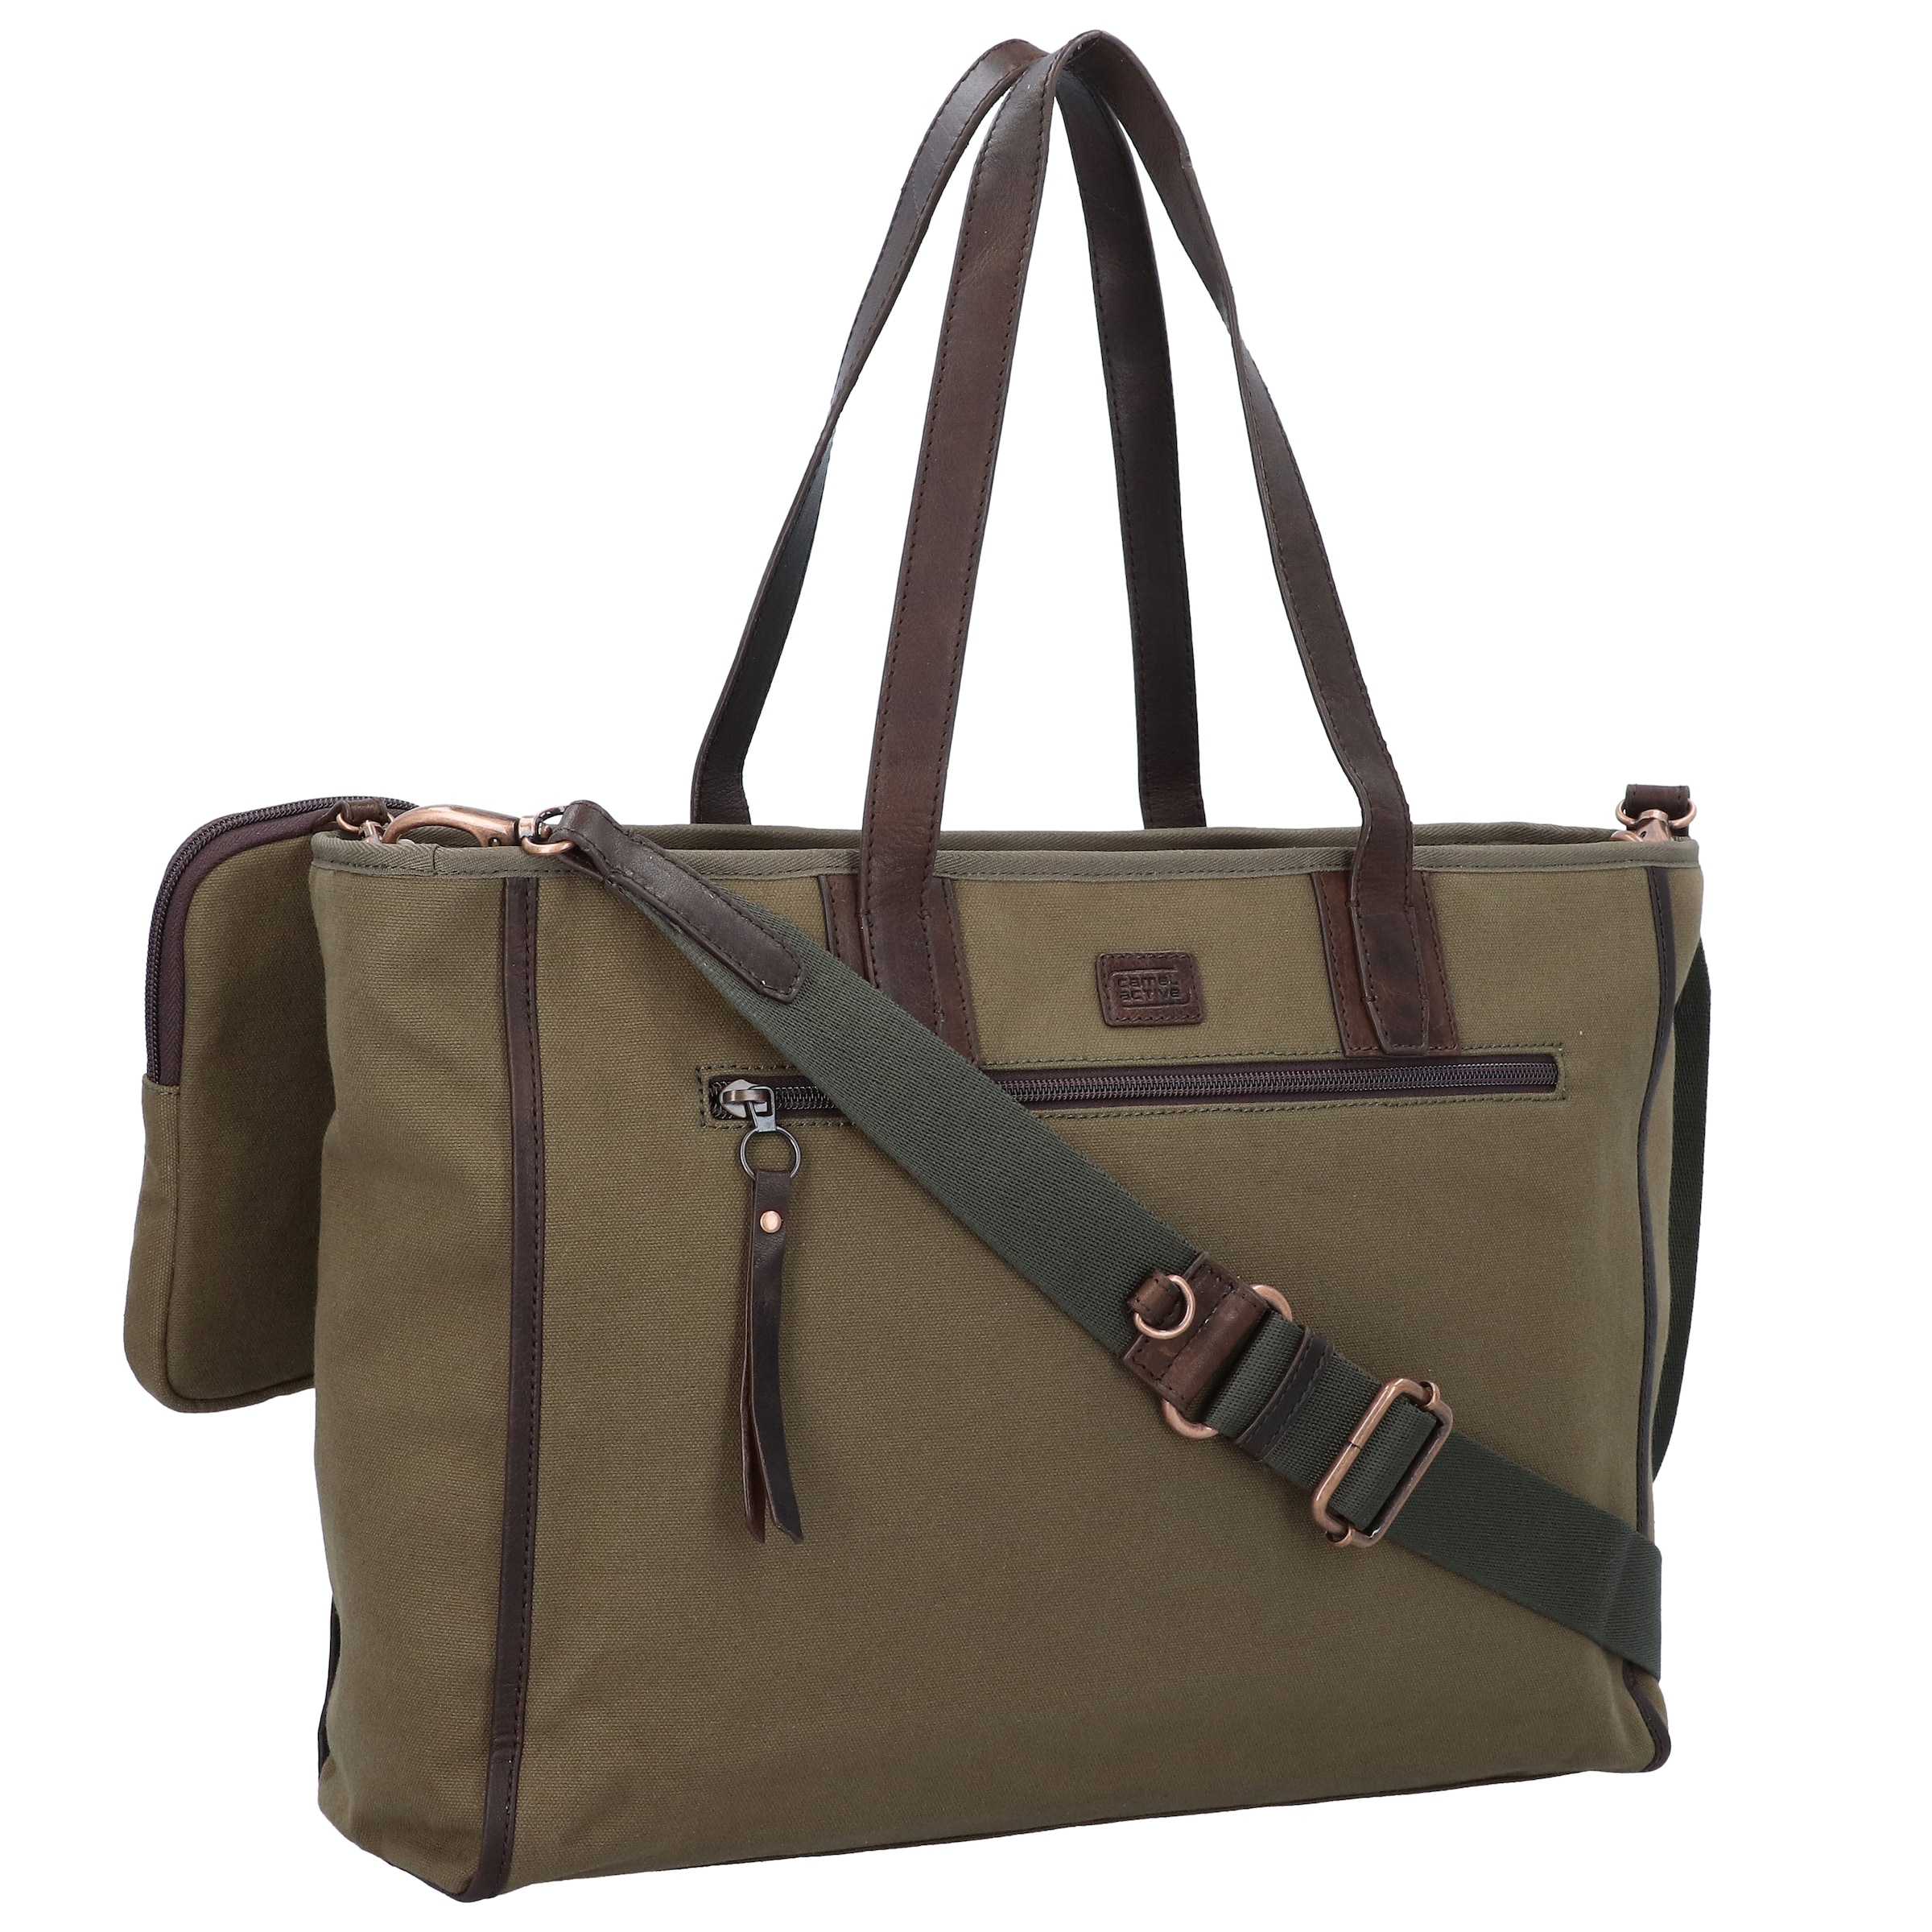 Frauen Taschen & Rucksäcke CAMEL ACTIVE Tasche in Khaki - PB72217